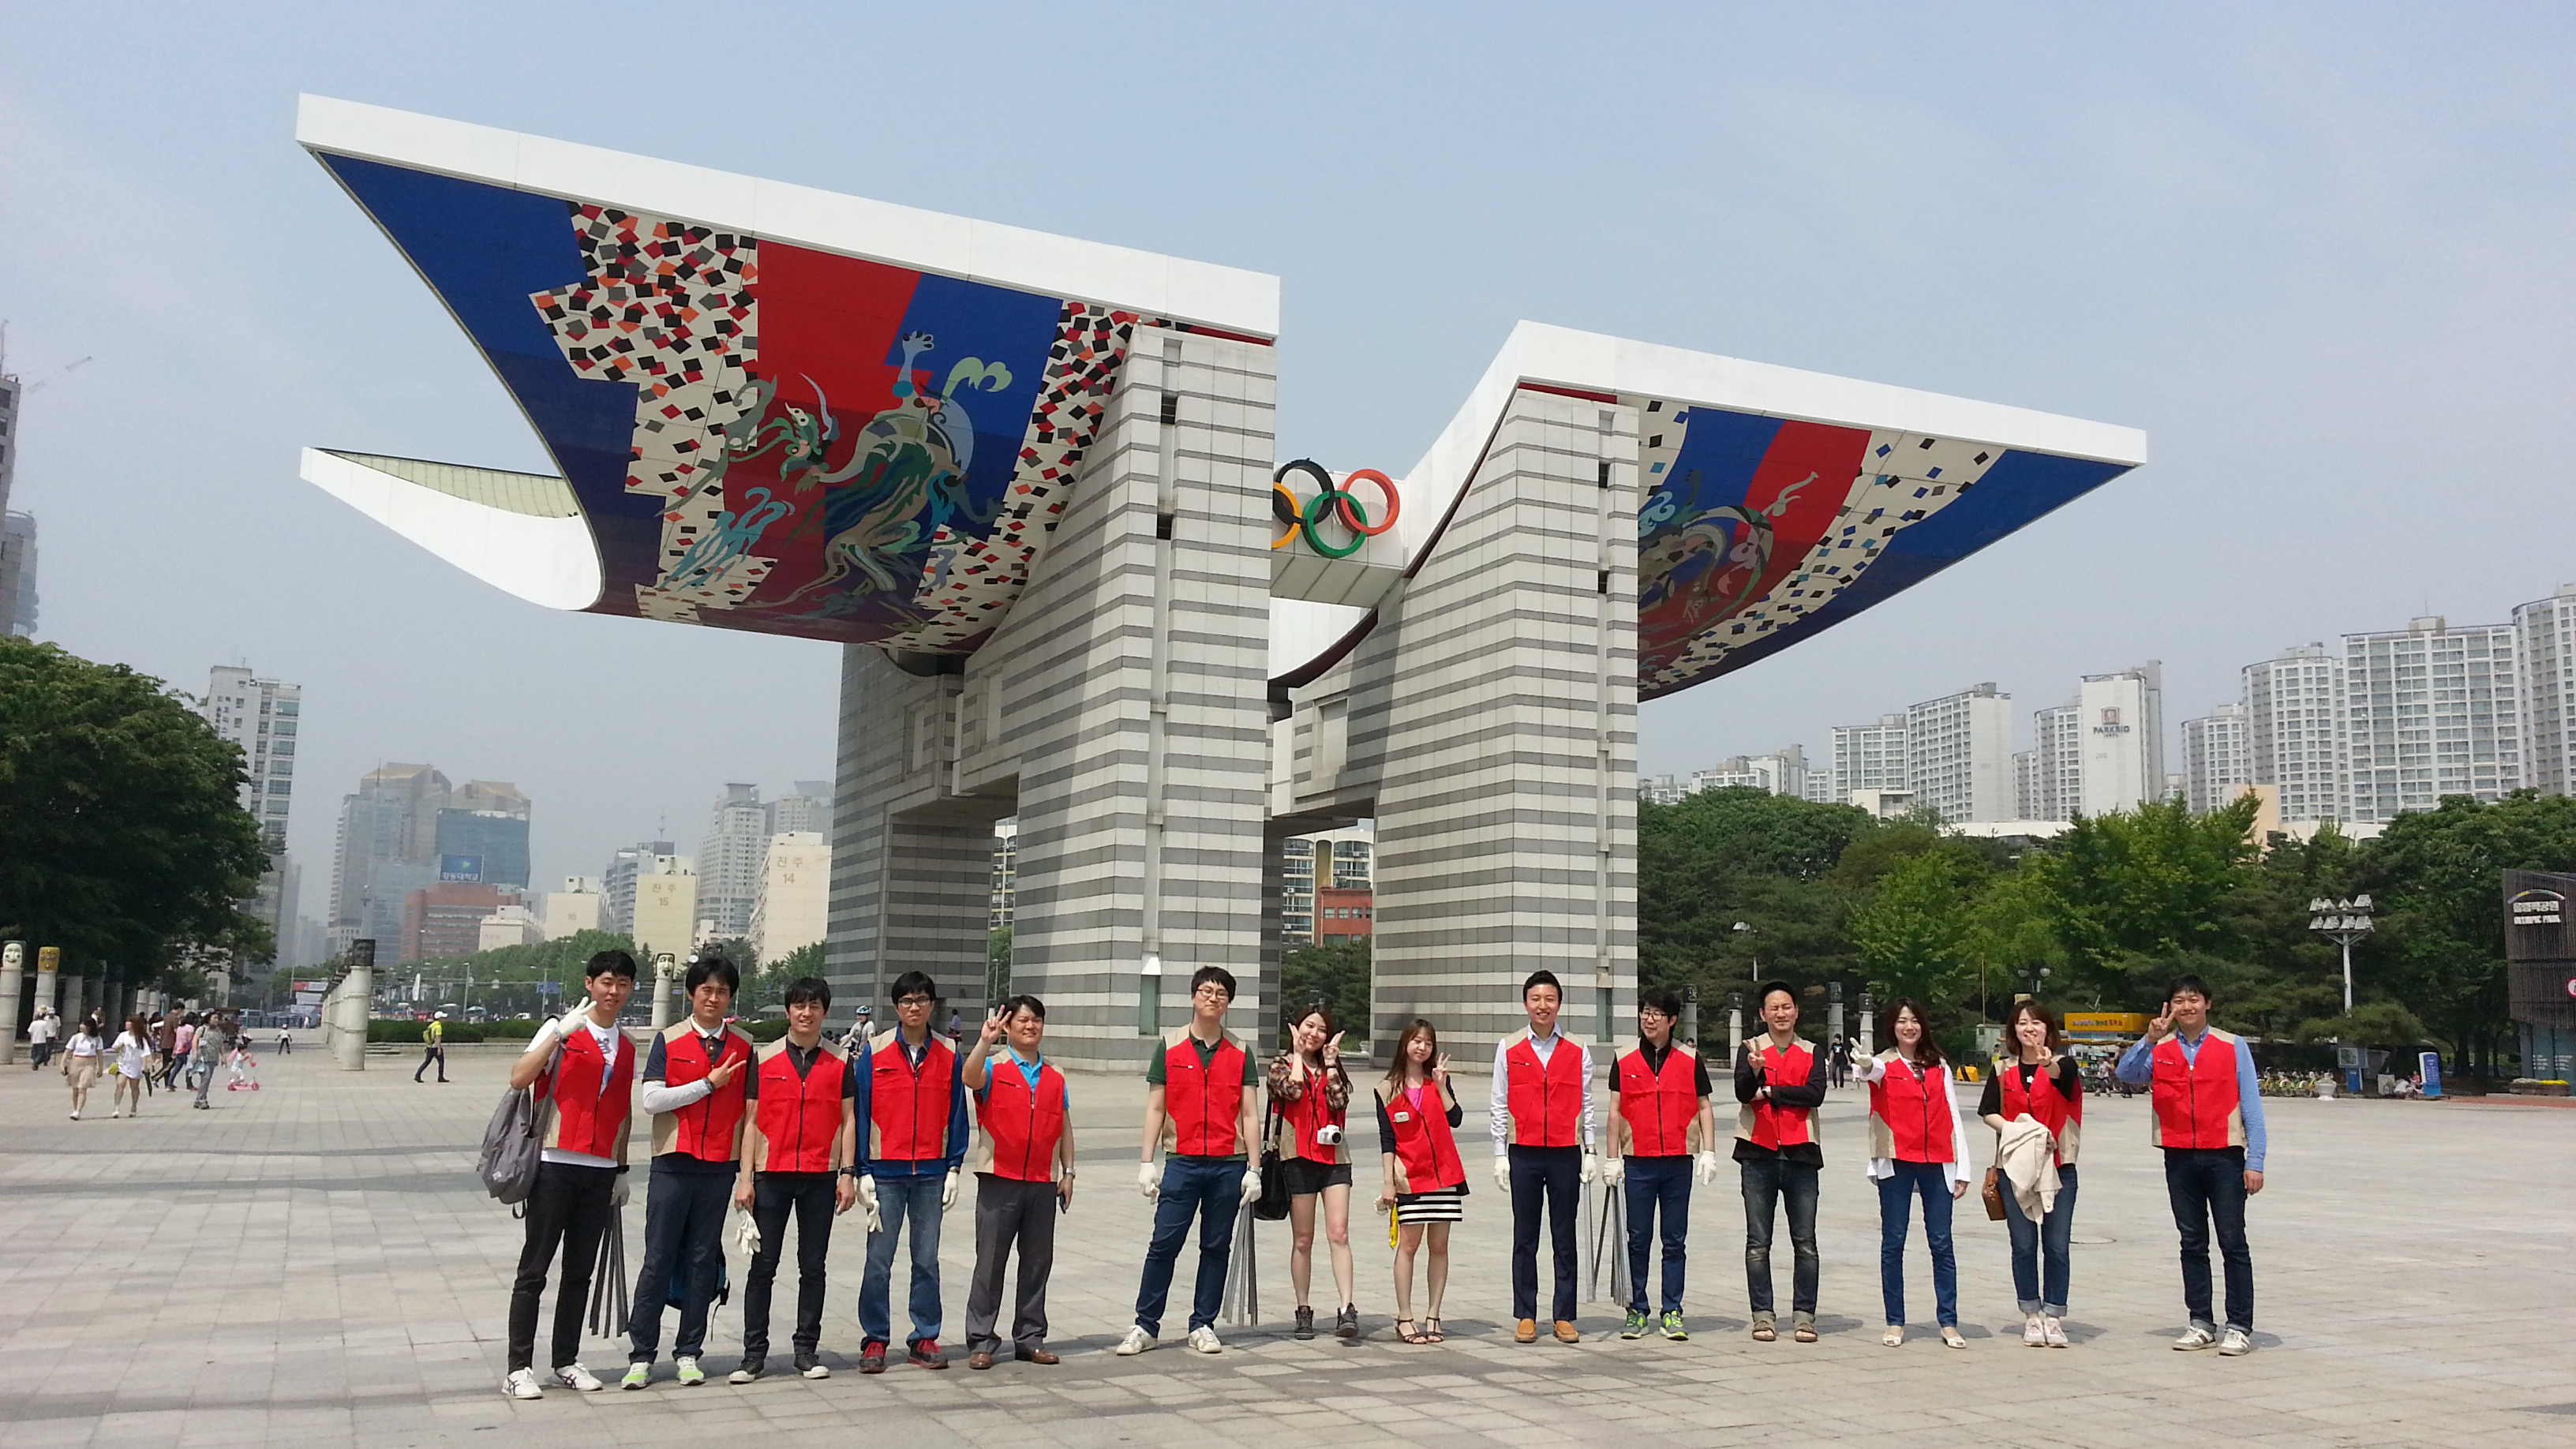 올림픽공원 주변 환경을 위해 임직원들이 함께 청소대회를 진행하였습니다. 